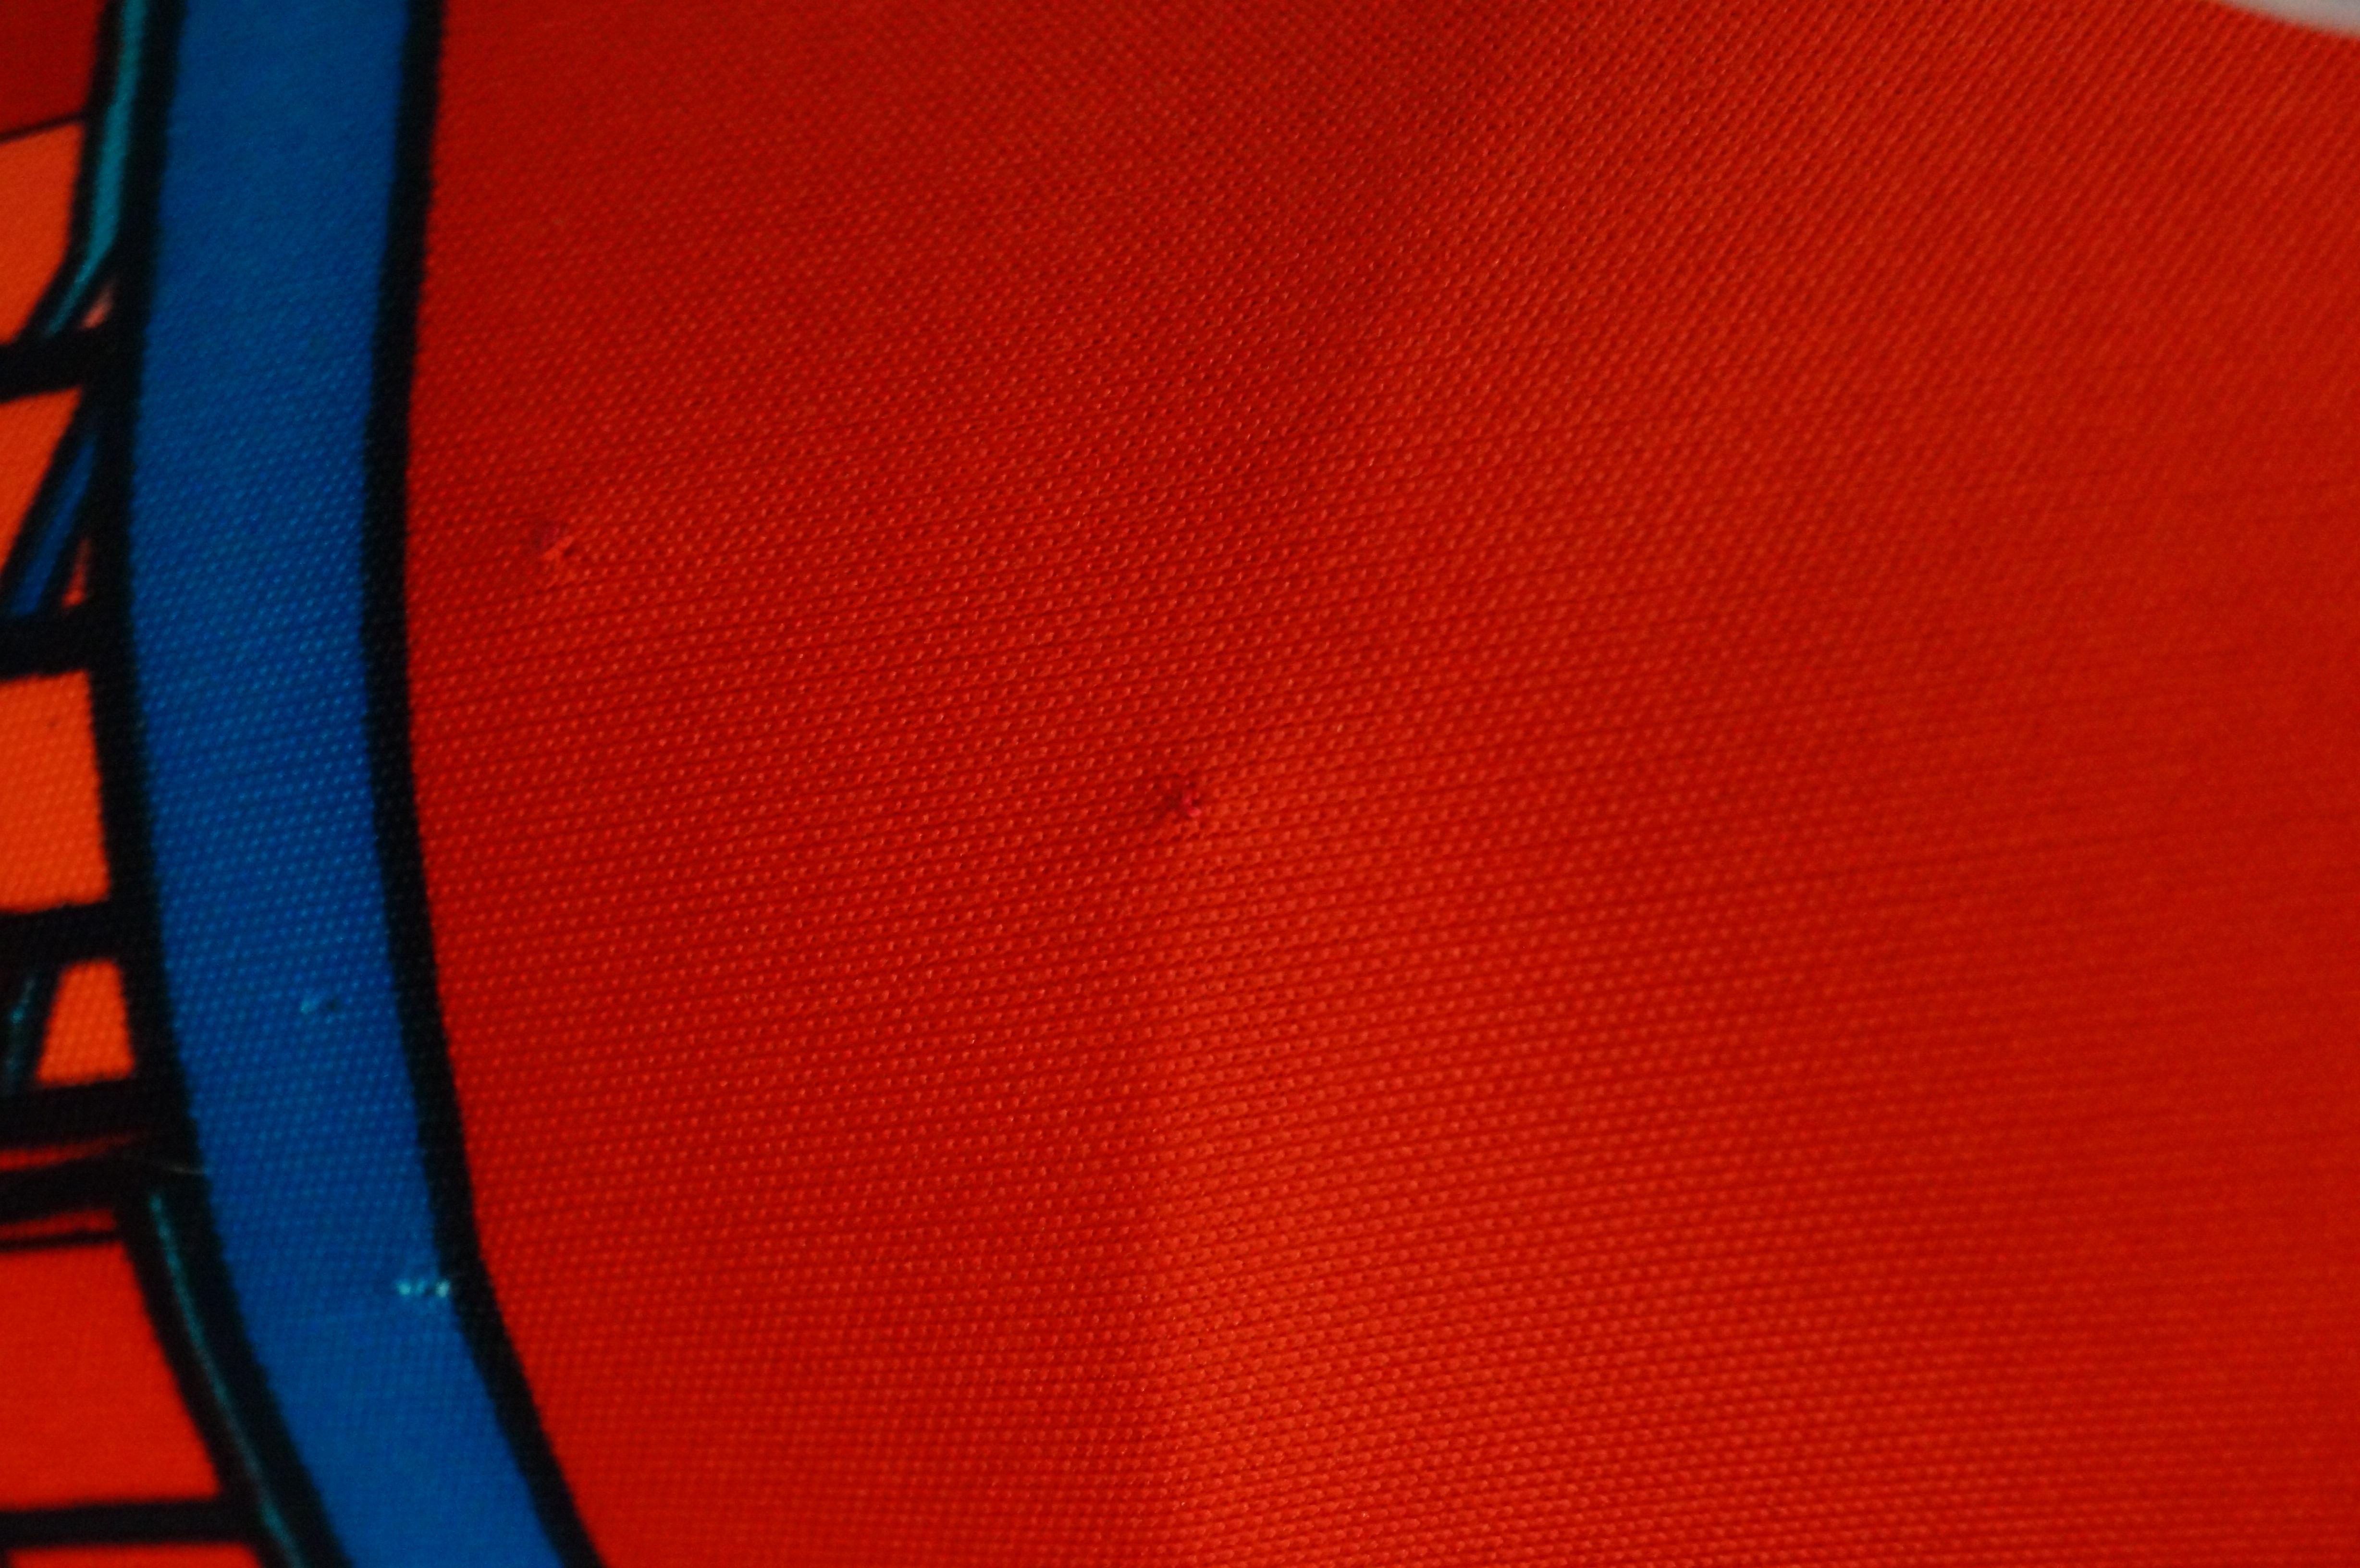 1970s Roberta di Camerino Red and Blue Trompe L'oeil Midi Dress For Sale 2